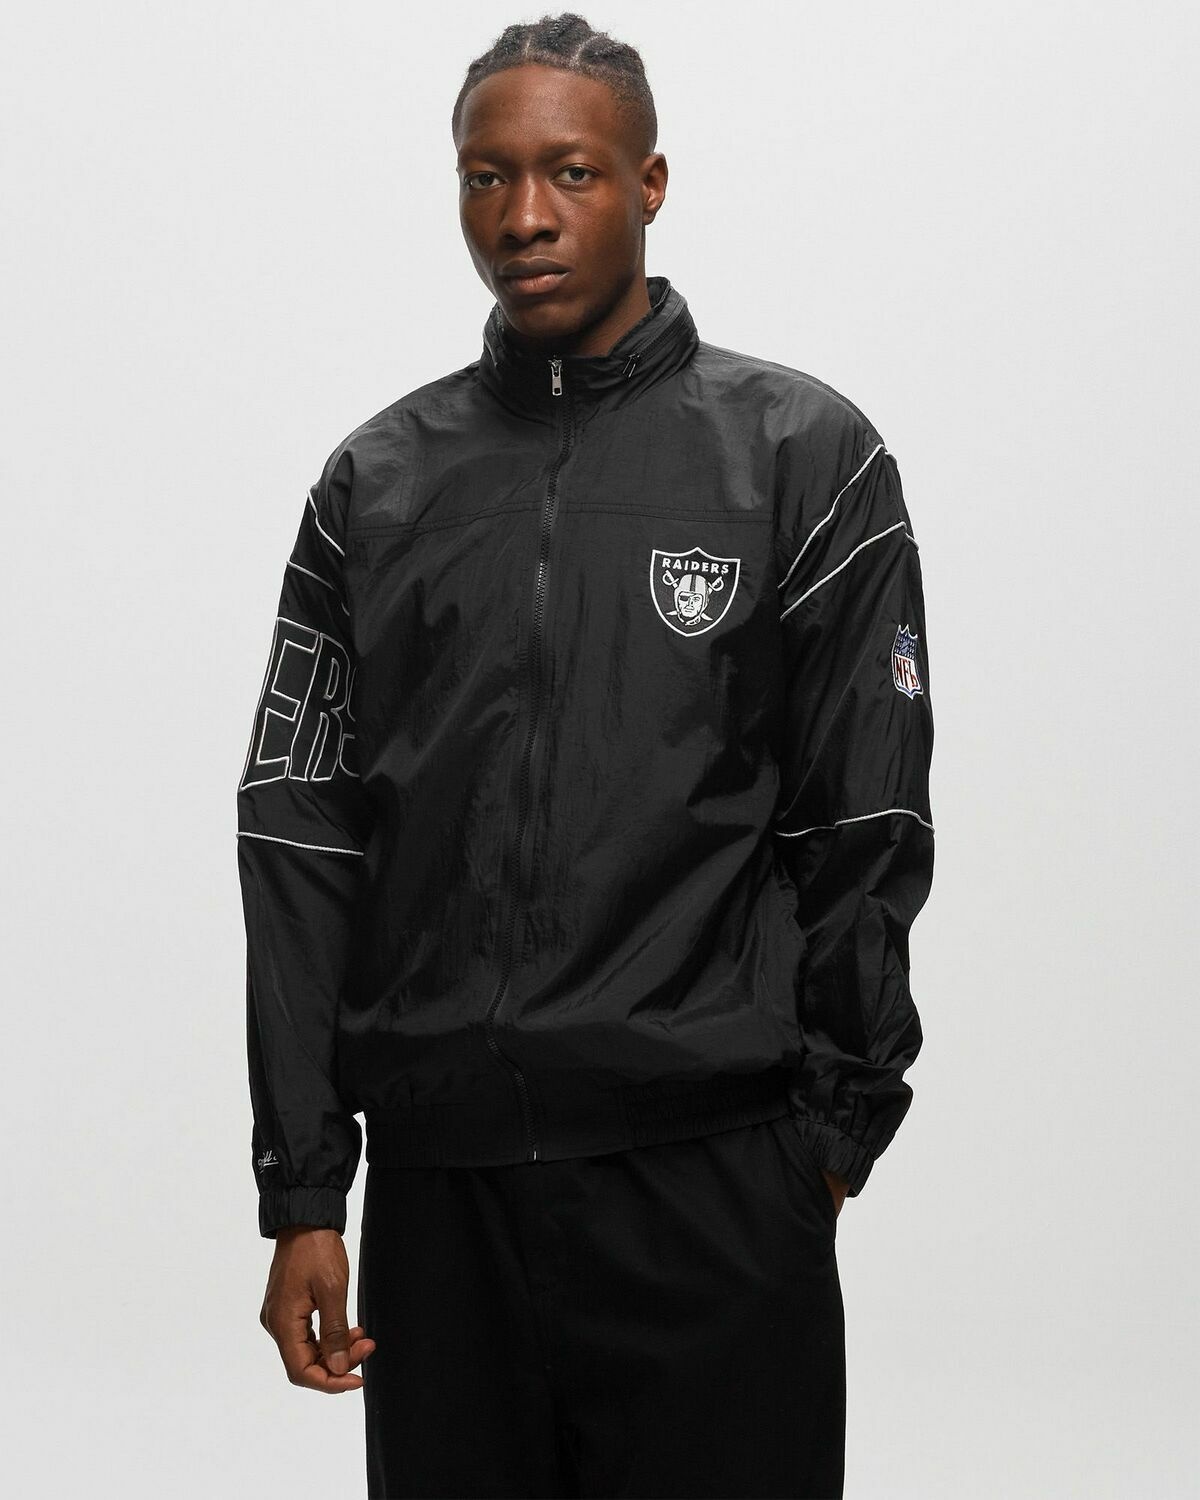 Mitchell & Ness La Raiders   Sideline Jacket Black - Mens - Team Jackets/Track Jackets